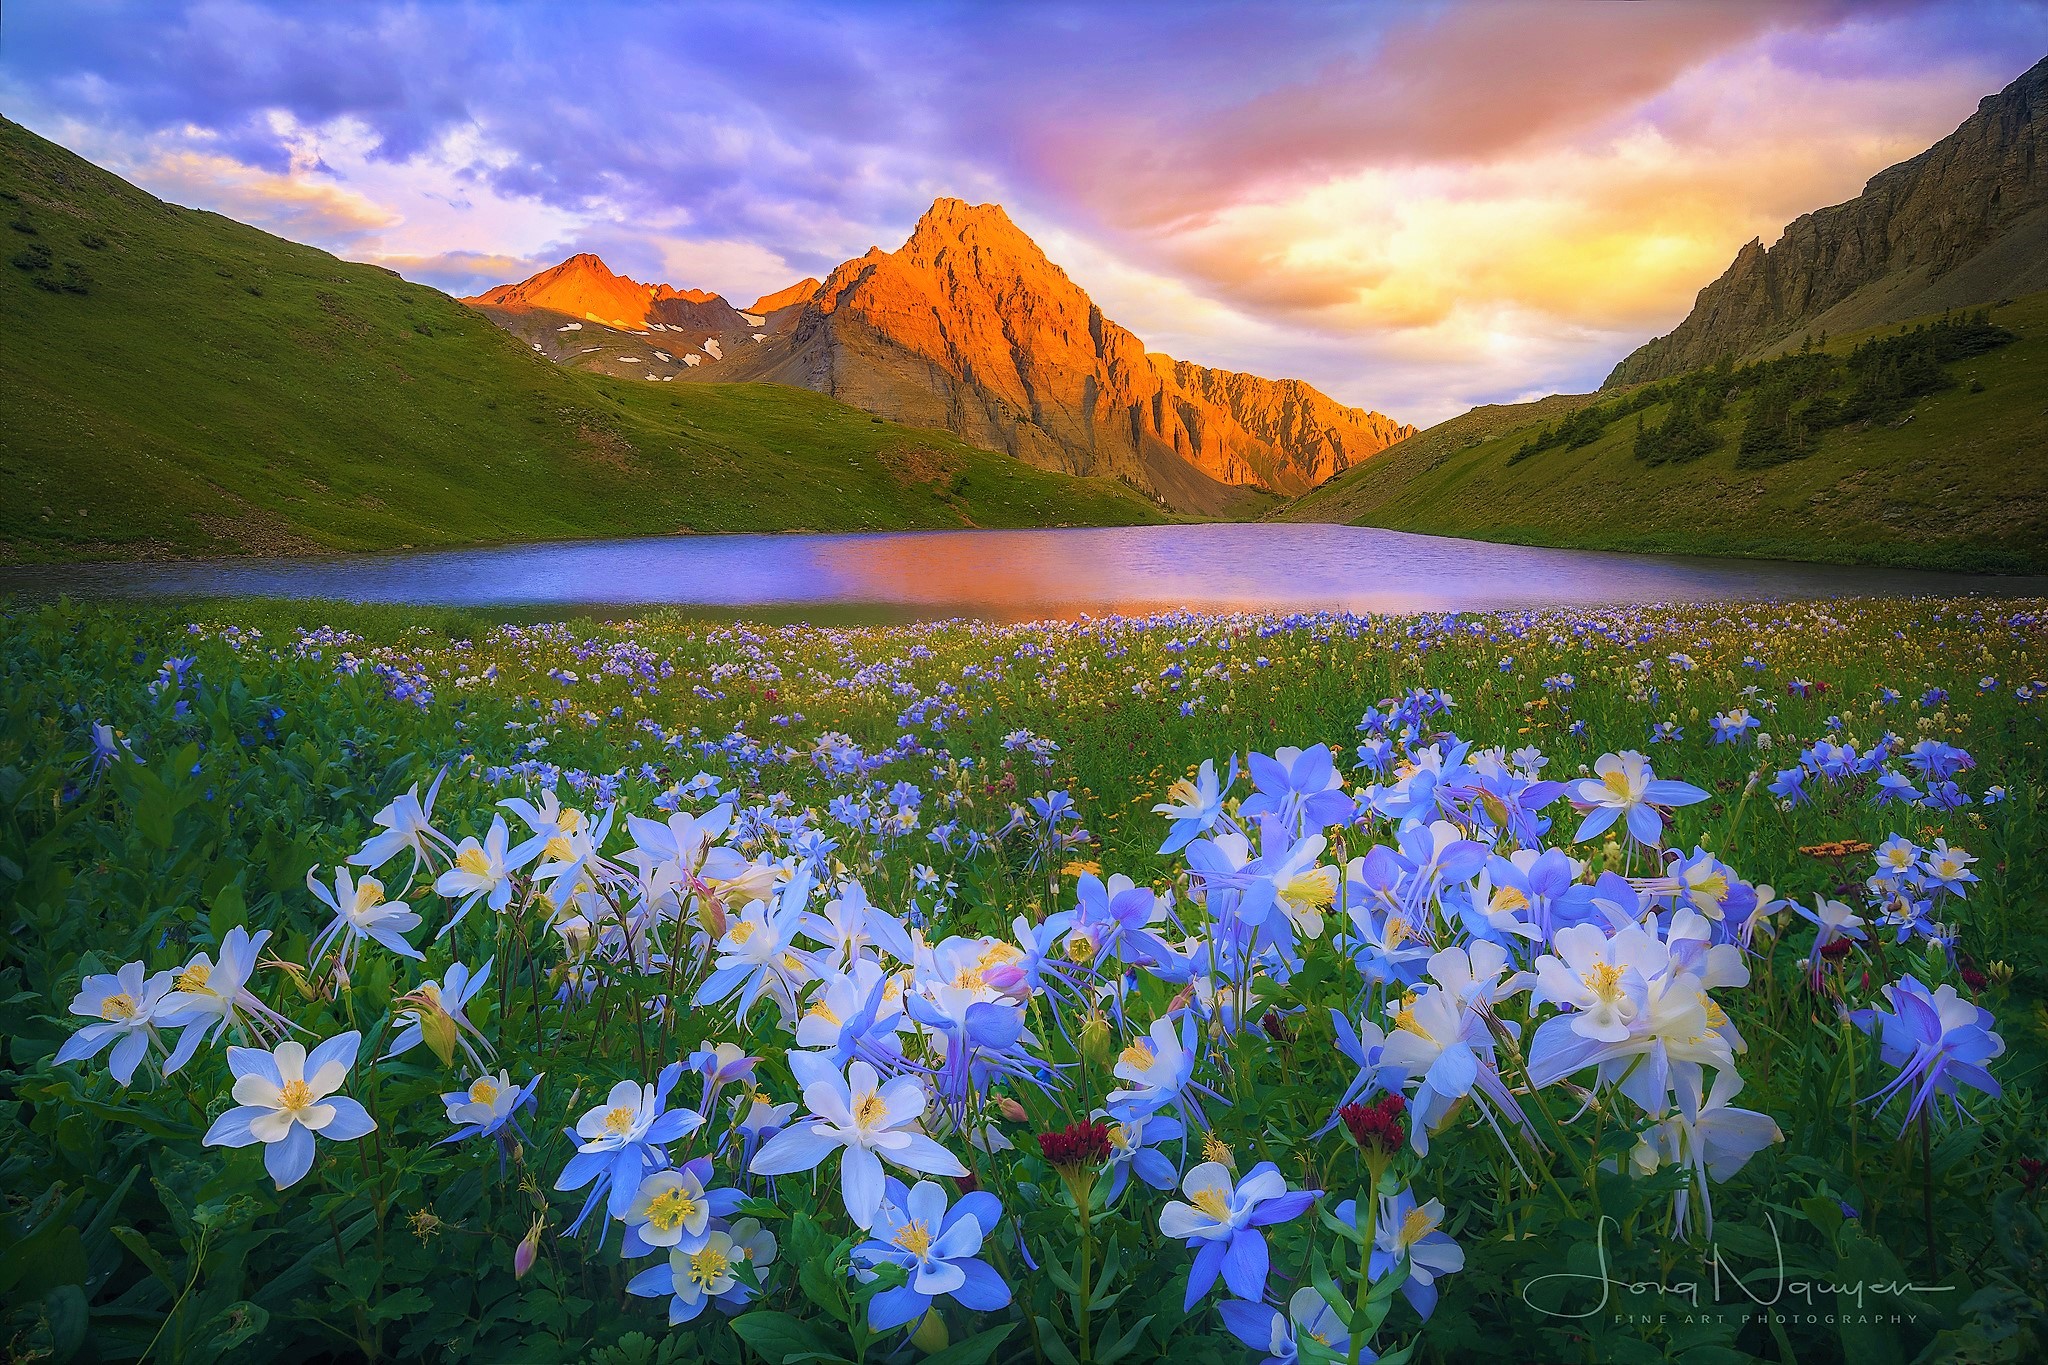 Красивые горы с цветами